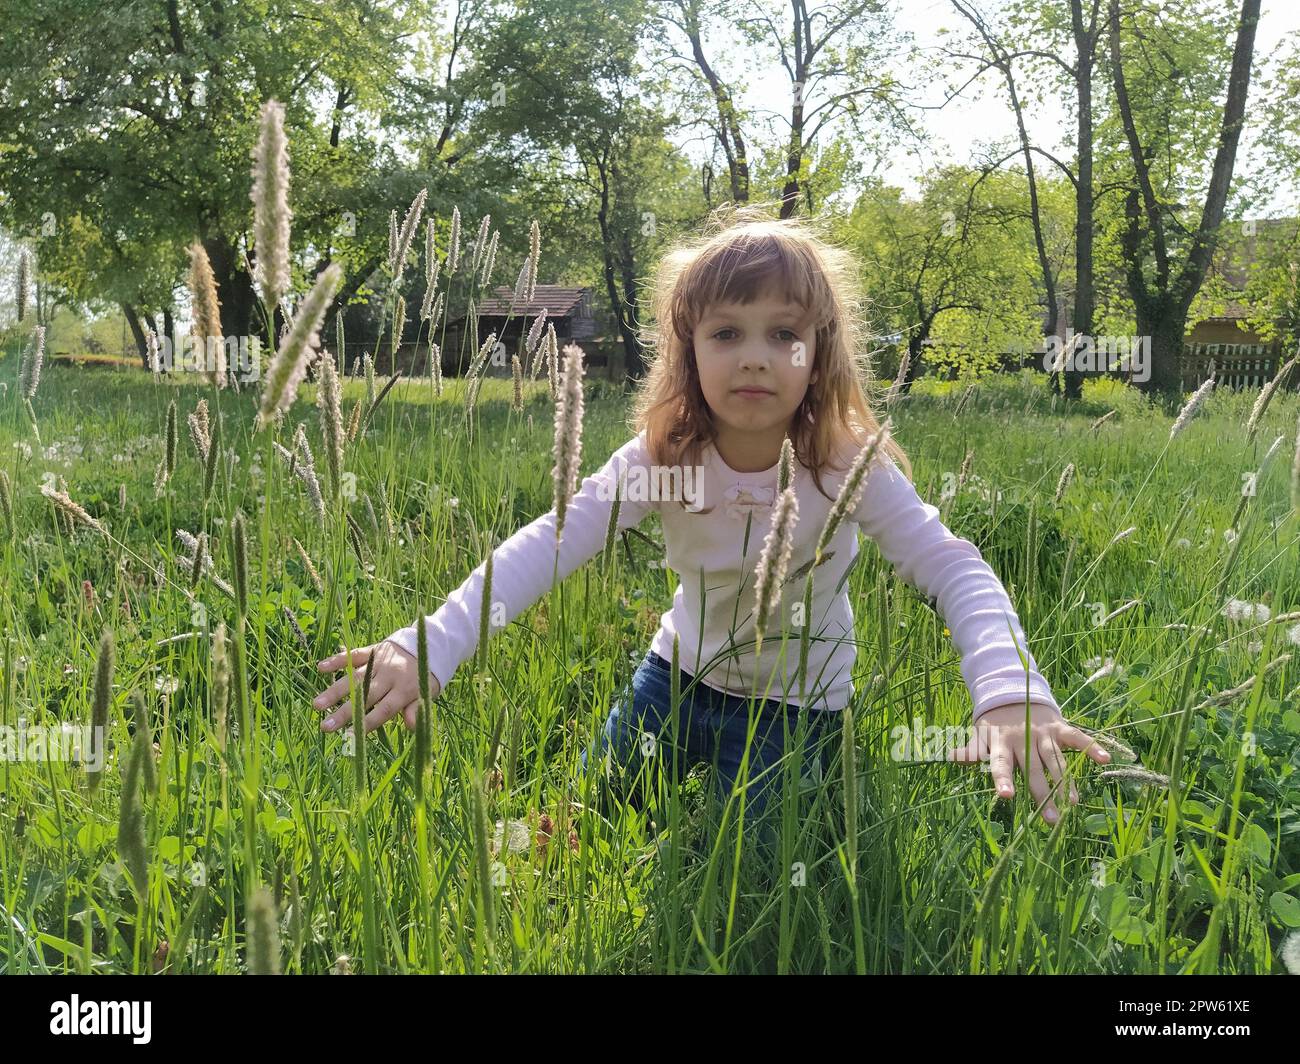 Mädchen auf der Wiese. Seidenartiges grünes Gras umgibt das Kind. Das Konzept der Ökologie und Harmonie mit der Natur. Süßes Mädchen berührt die Pflanzen mit ihr Stockfoto